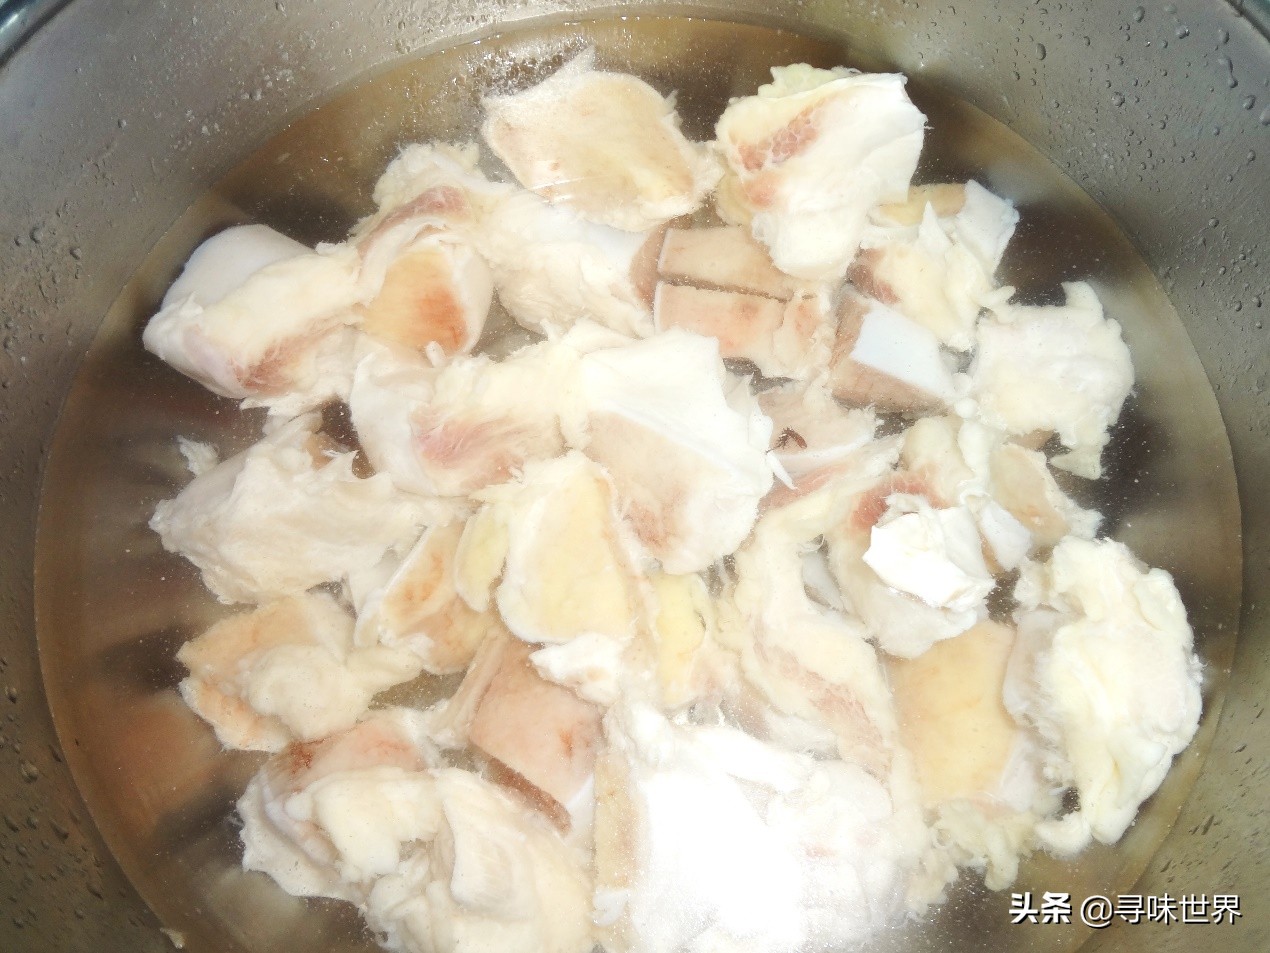 这才是熬牛骨汤正确做法，在家纯天然熬制，汤色奶白鲜美无比